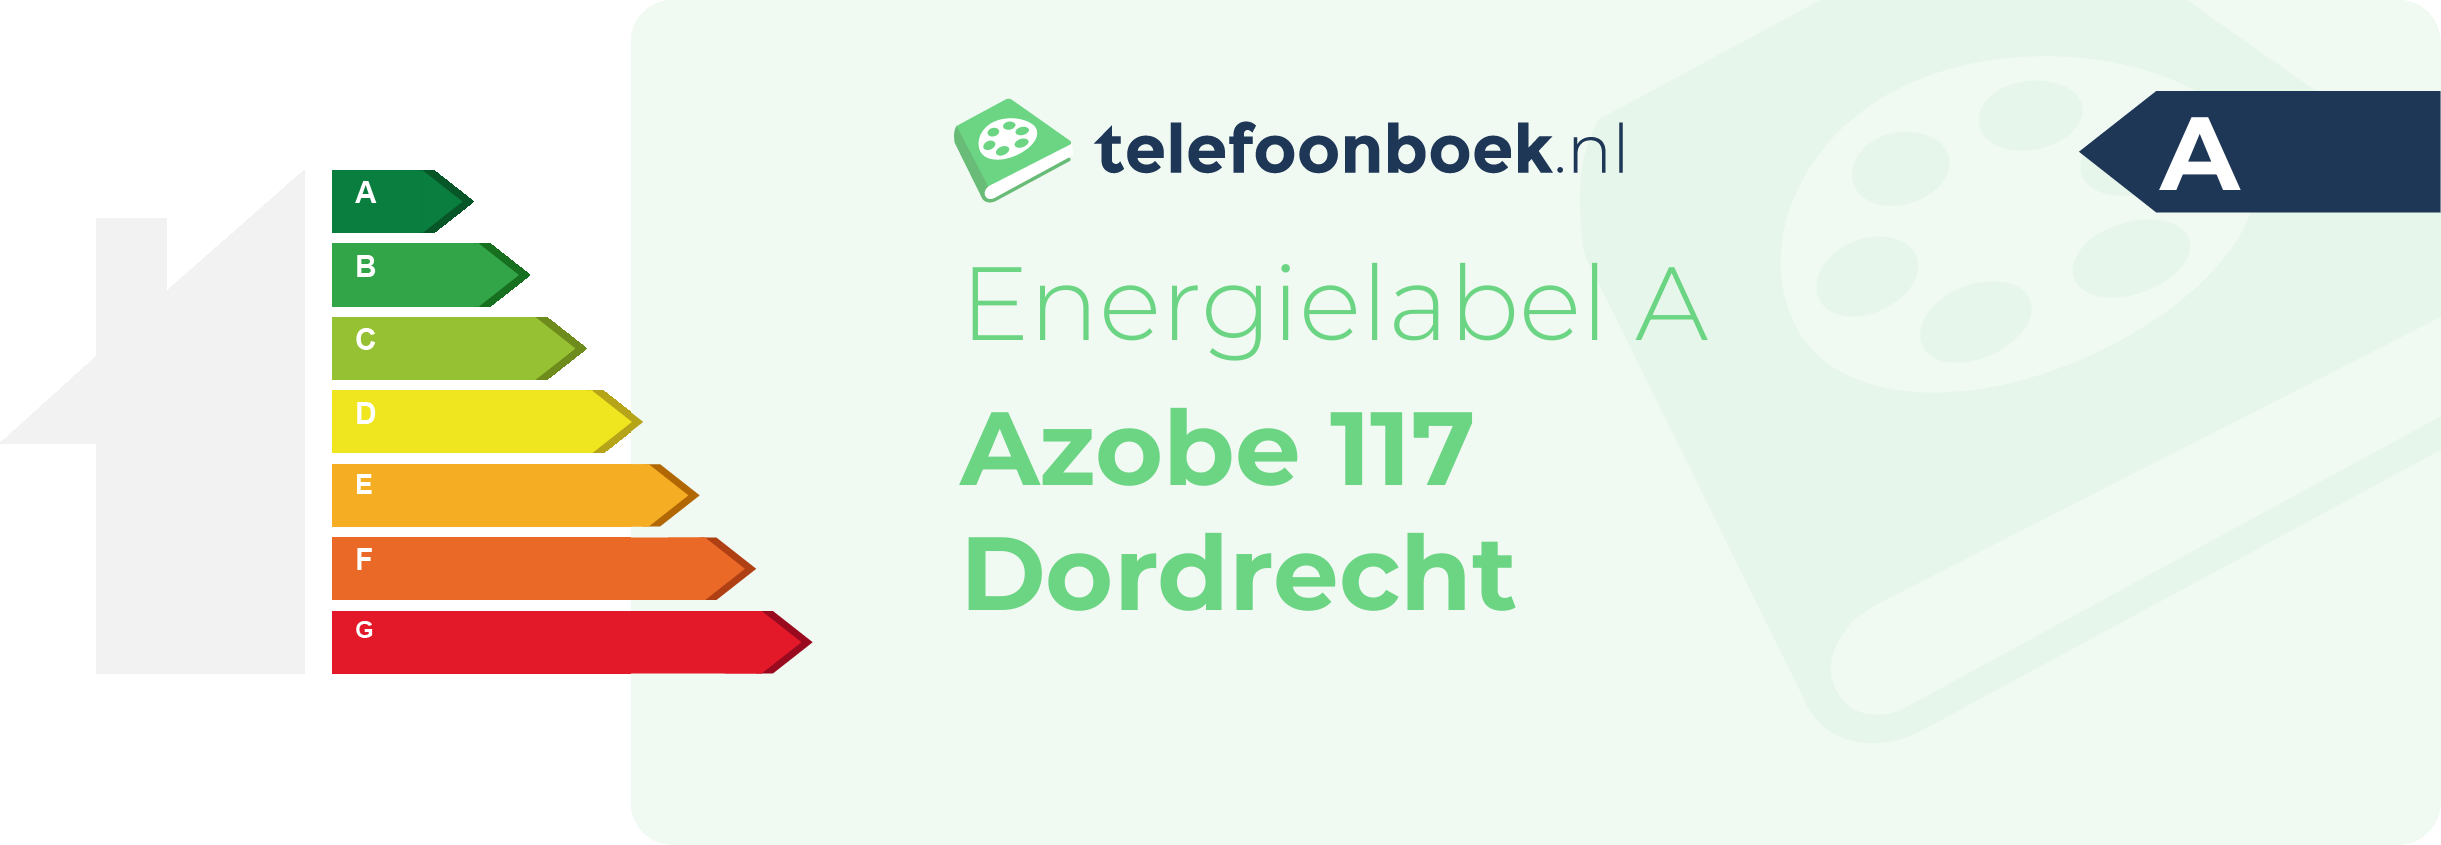 Energielabel Azobe 117 Dordrecht